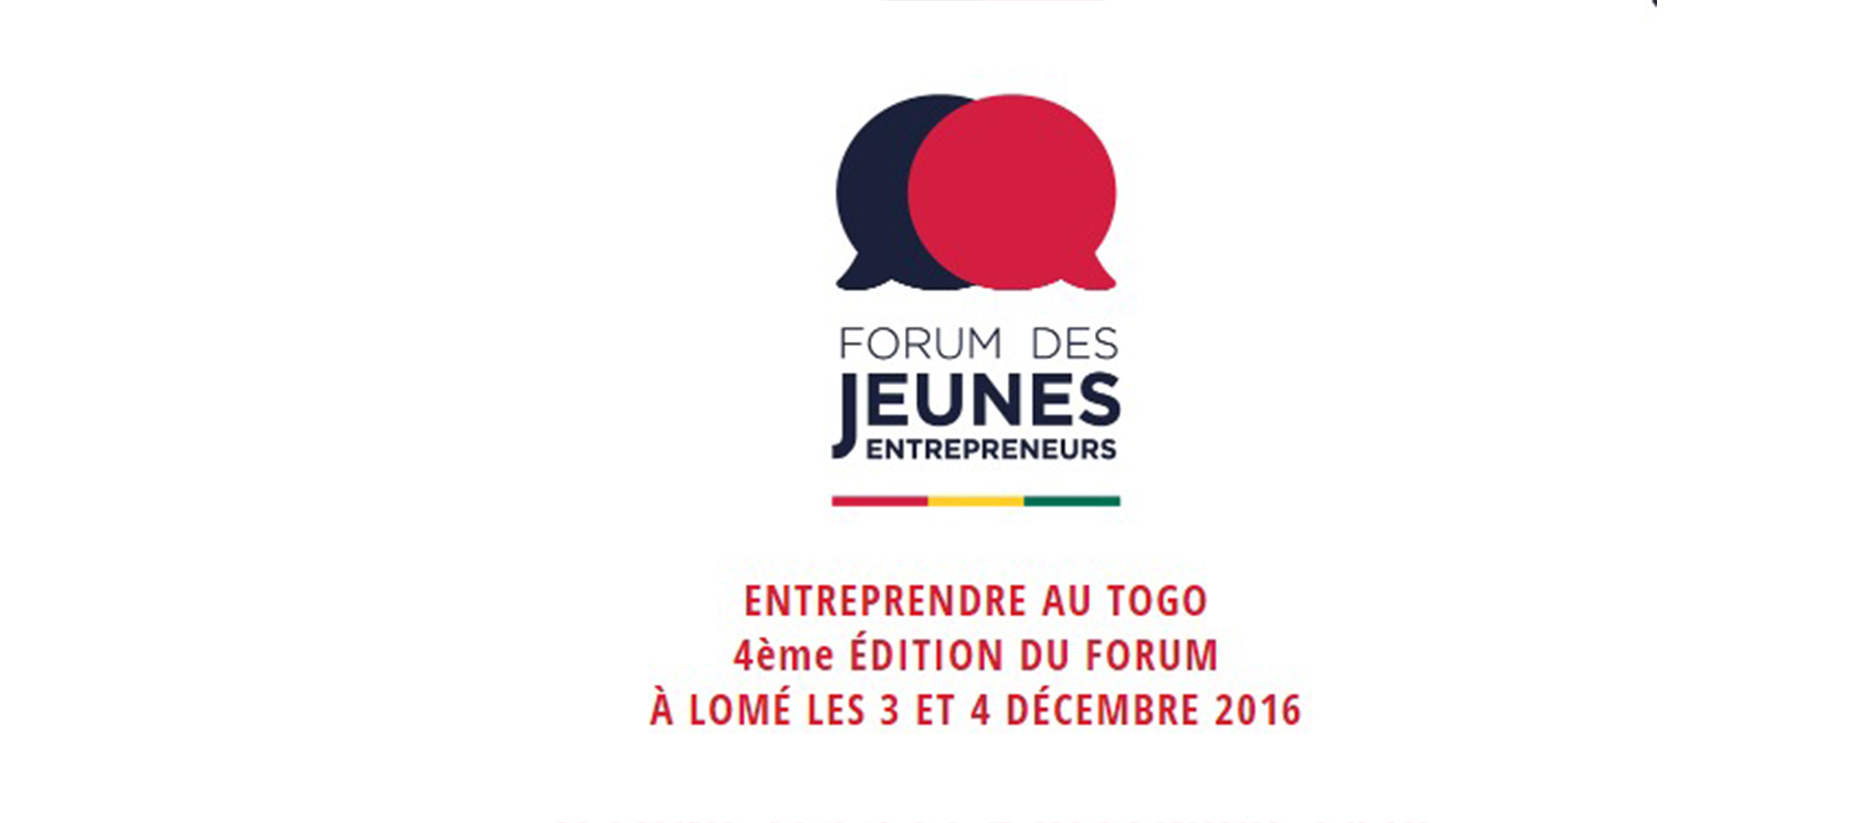 La 4ième édition du Forum des Jeunes Entrepreneurs